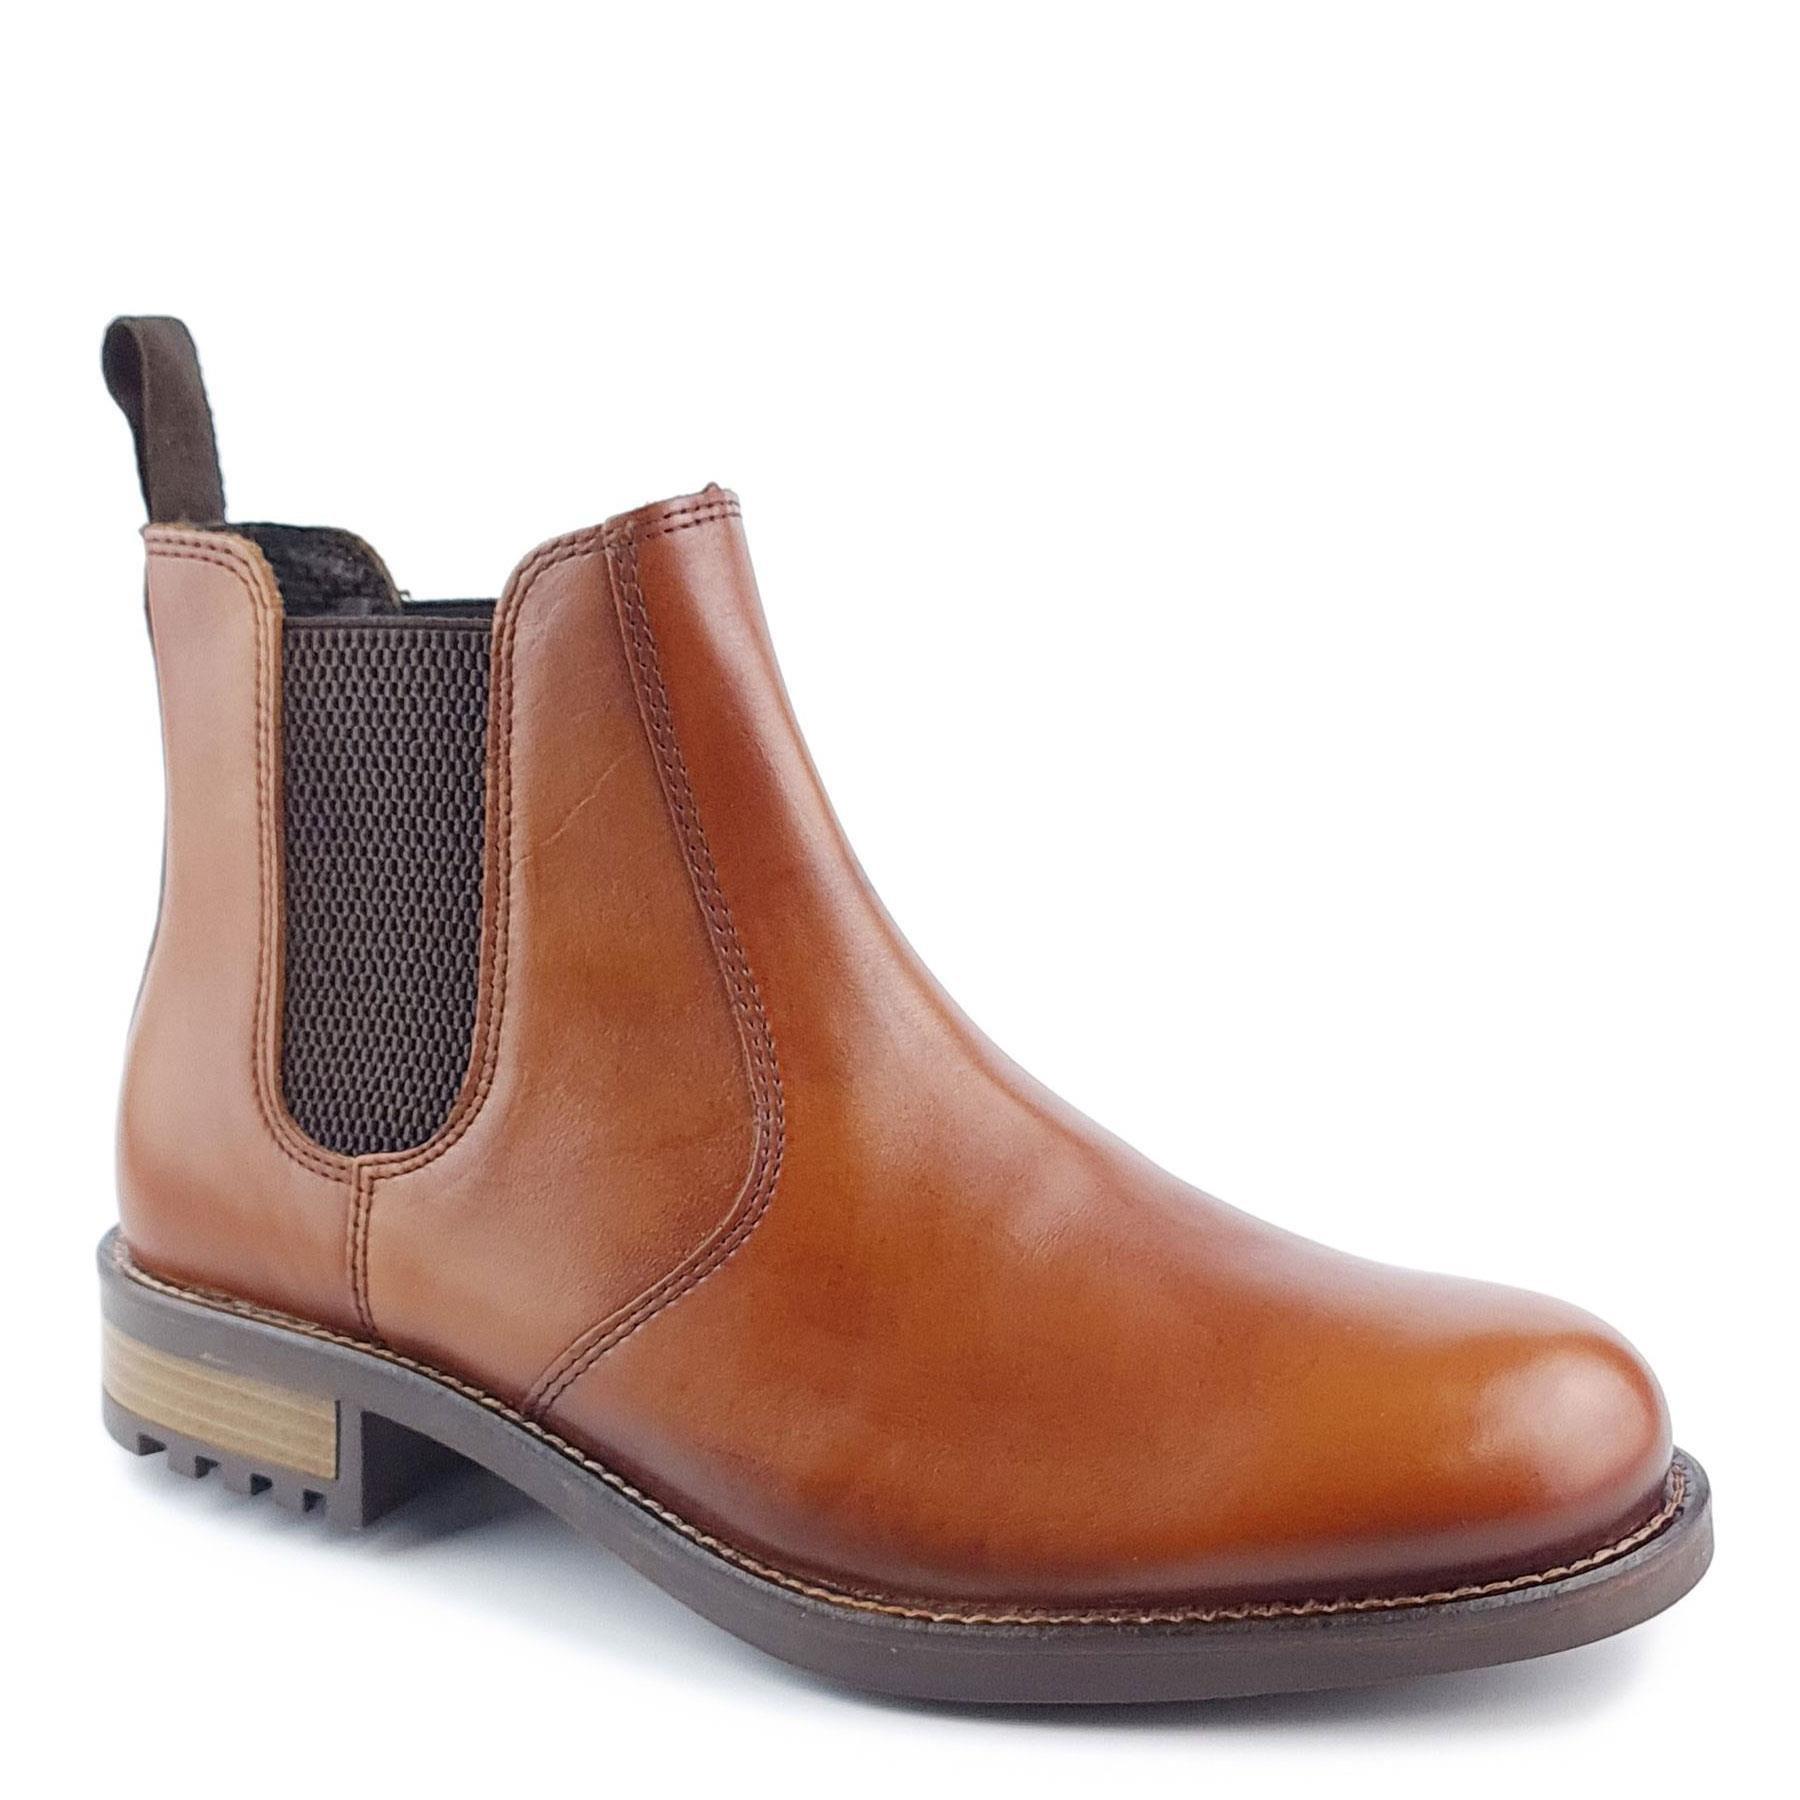 Кожаные ботинки челси Loddington Frank James, коричневый цена и фото